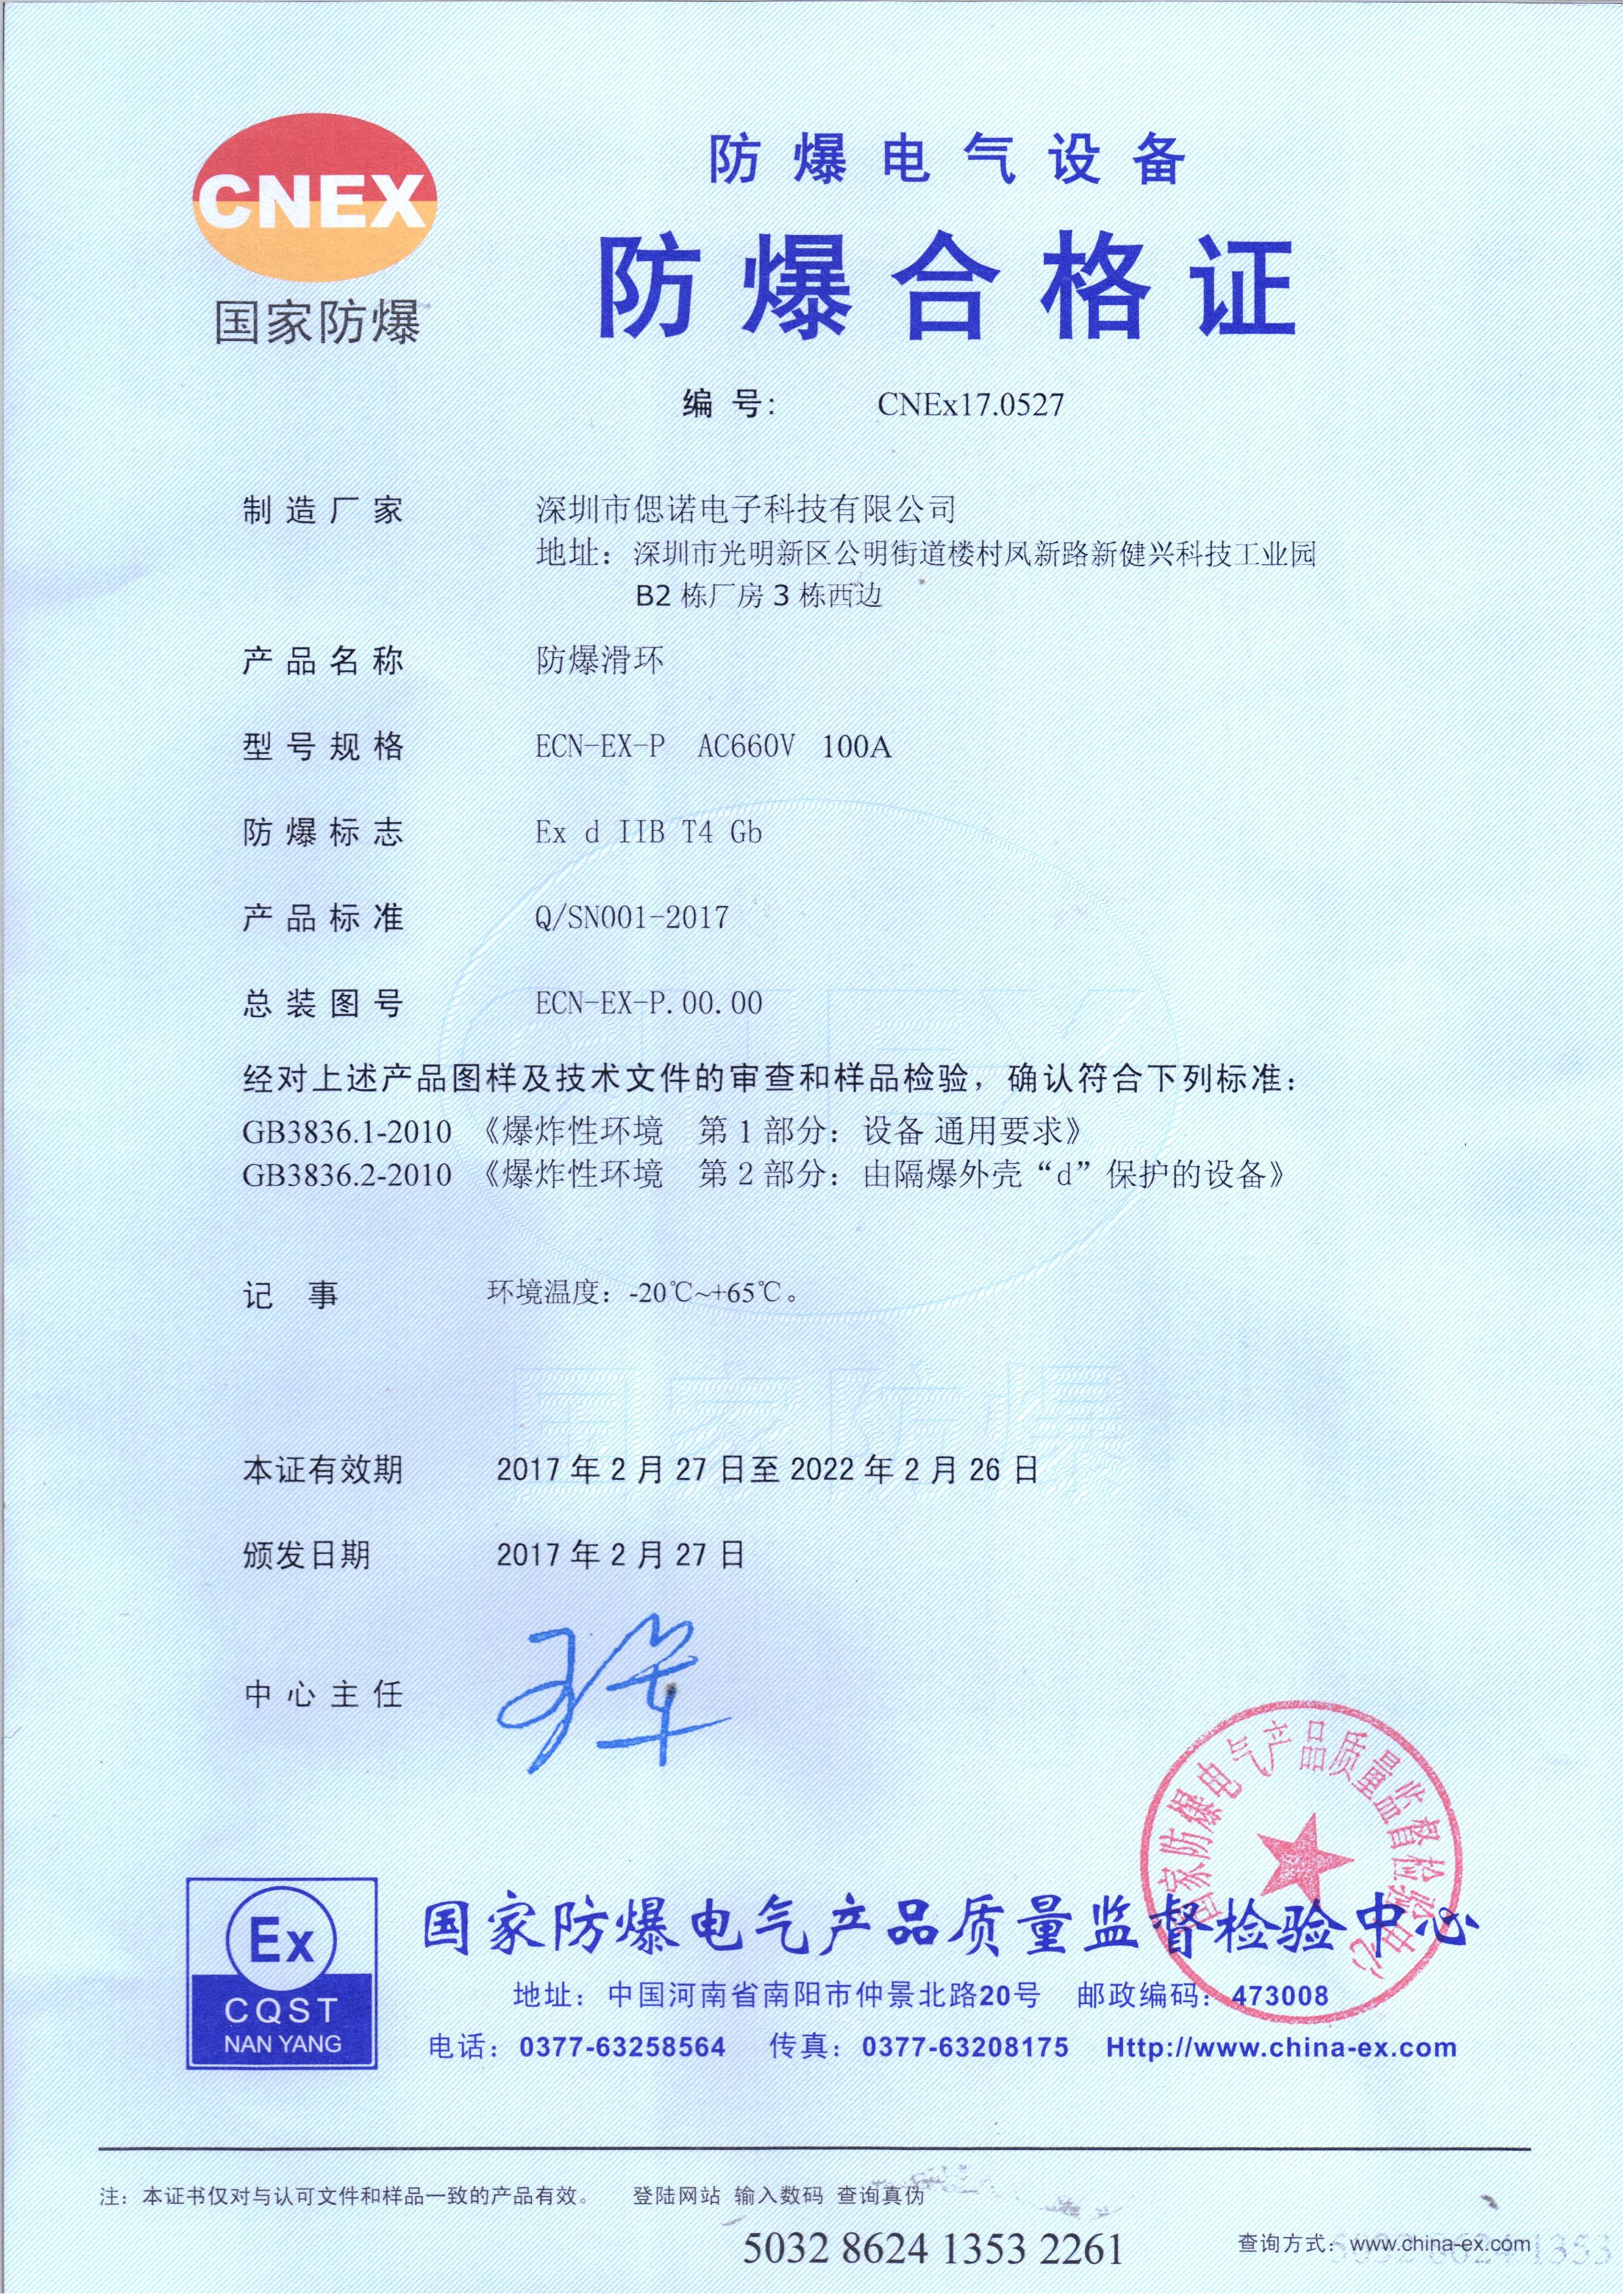 ประเทศจีน CENO Electronics Technology Co.,Ltd รับรอง